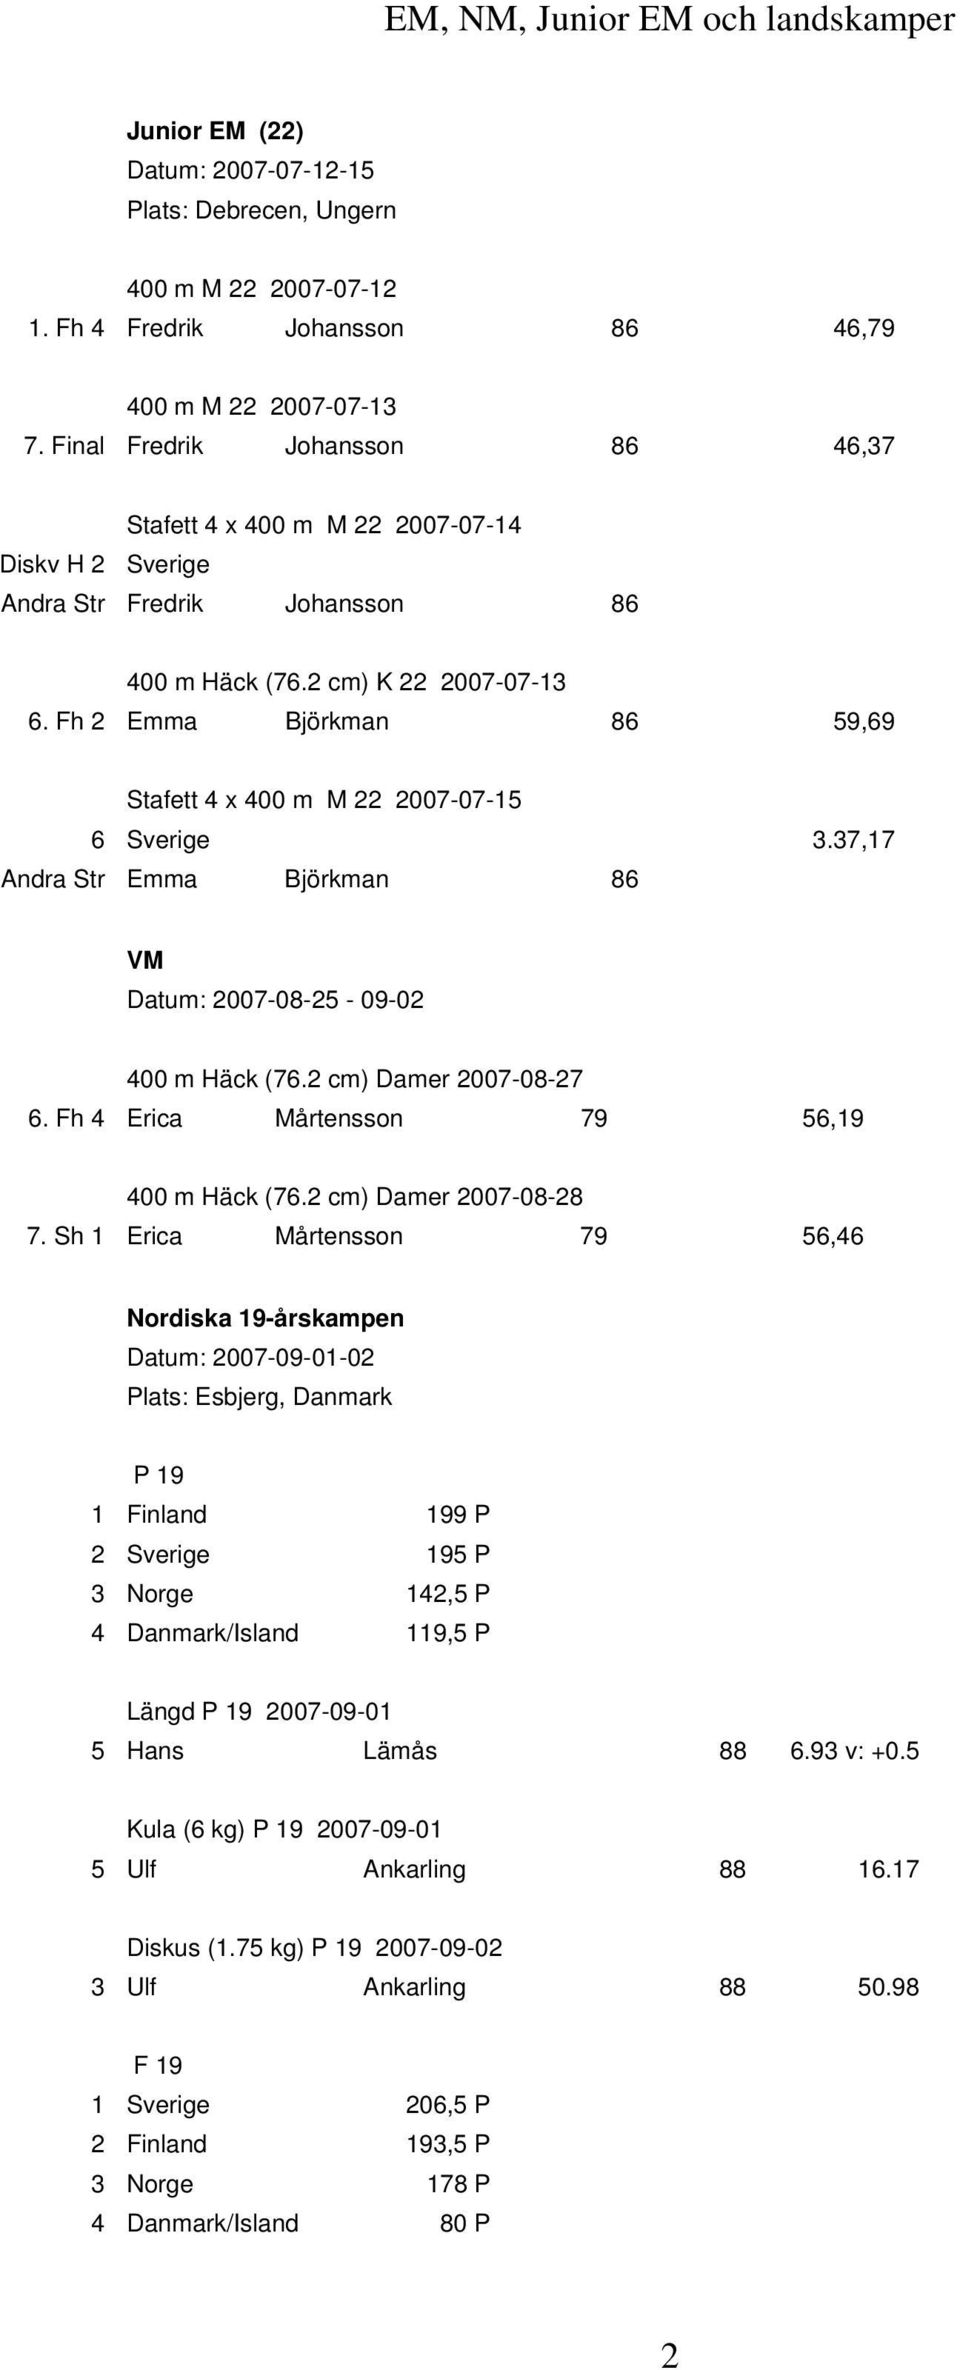 Fh 2 Emma Björkman 86 59,69 Stafett 4 x 400 m M 22 2007-07-15 6 Sverige 3.37,17 Andra Str Emma Björkman 86 VM Datum: 2007-08-25-09-02 400 m Häck (76.2 cm) Damer 2007-08-27 6.